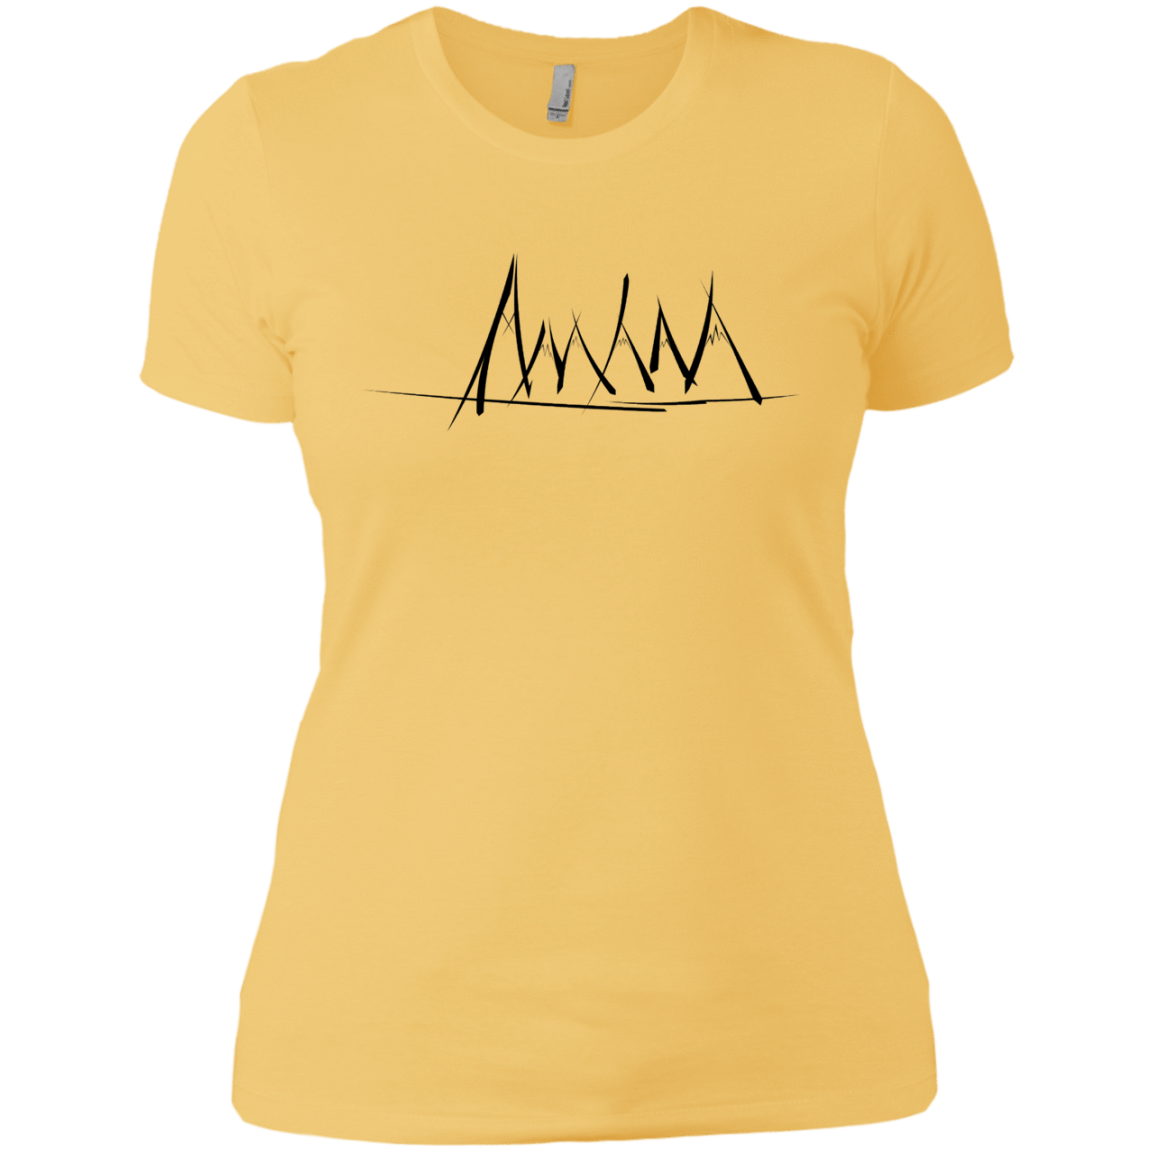 T-Shirts Banana Cream/ / X-Small Mountain Brush Strokes Women's Premium T-Shirt